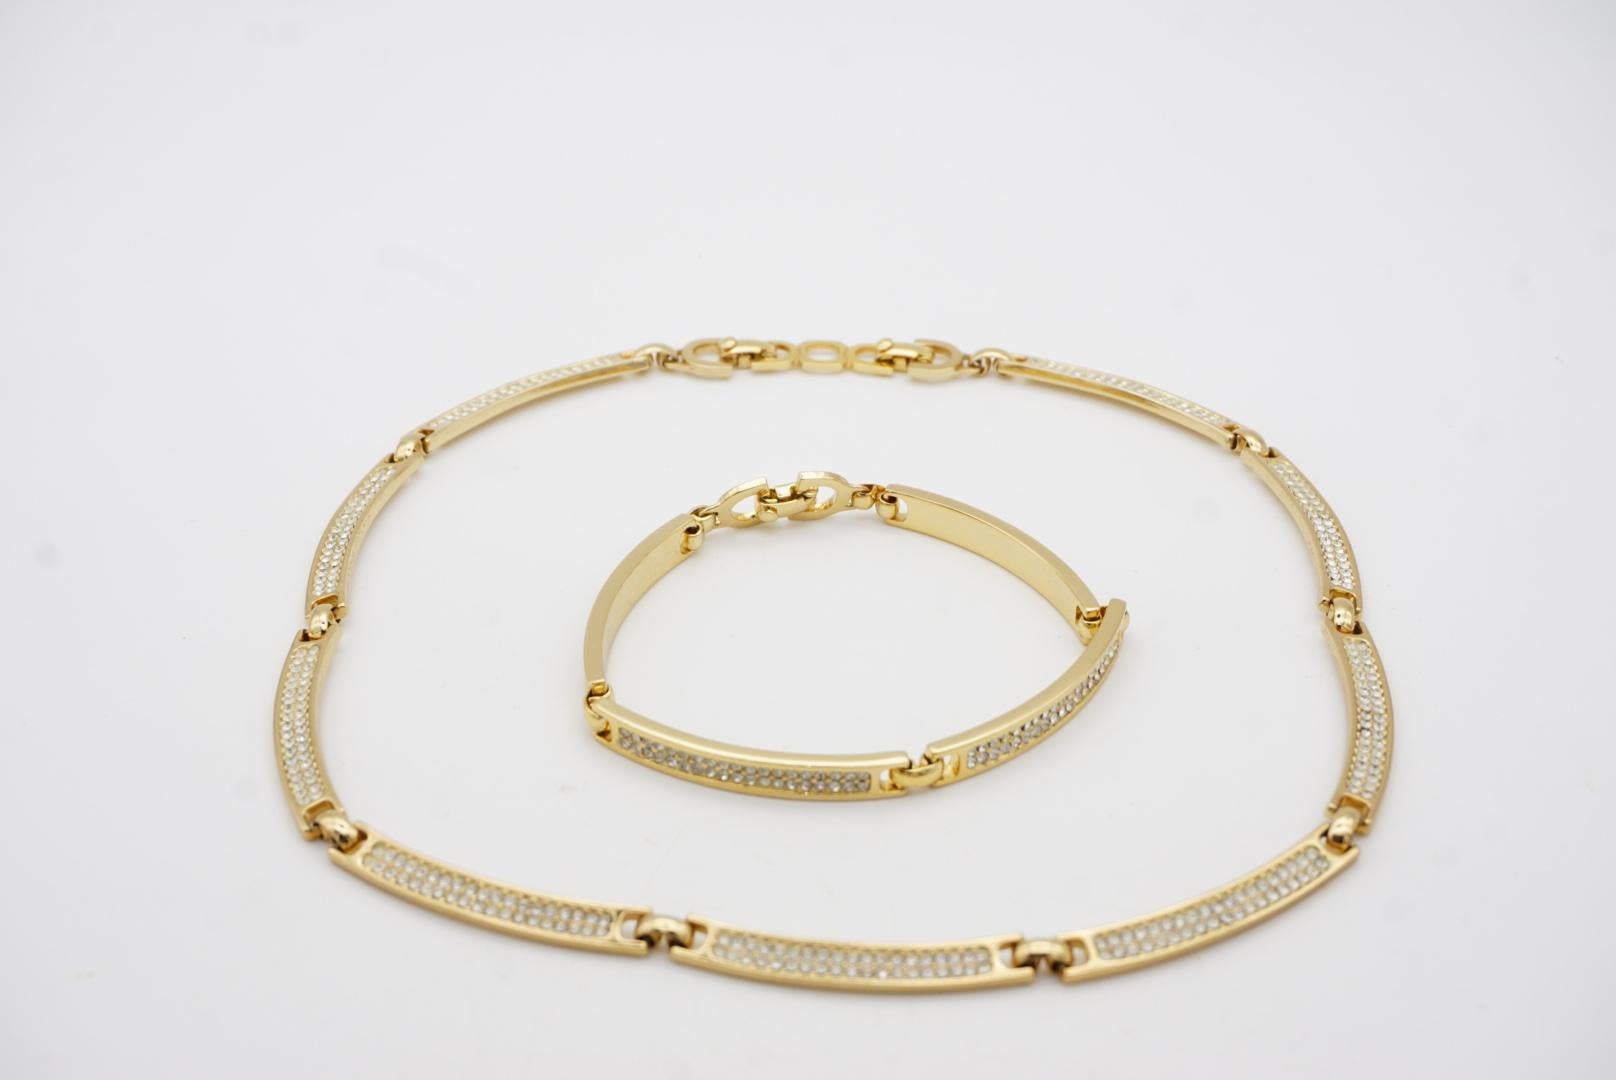 Christian Dior Vintage 1980s Unisex Crystals Interlink Choker Necklace Bracelet For Sale 9